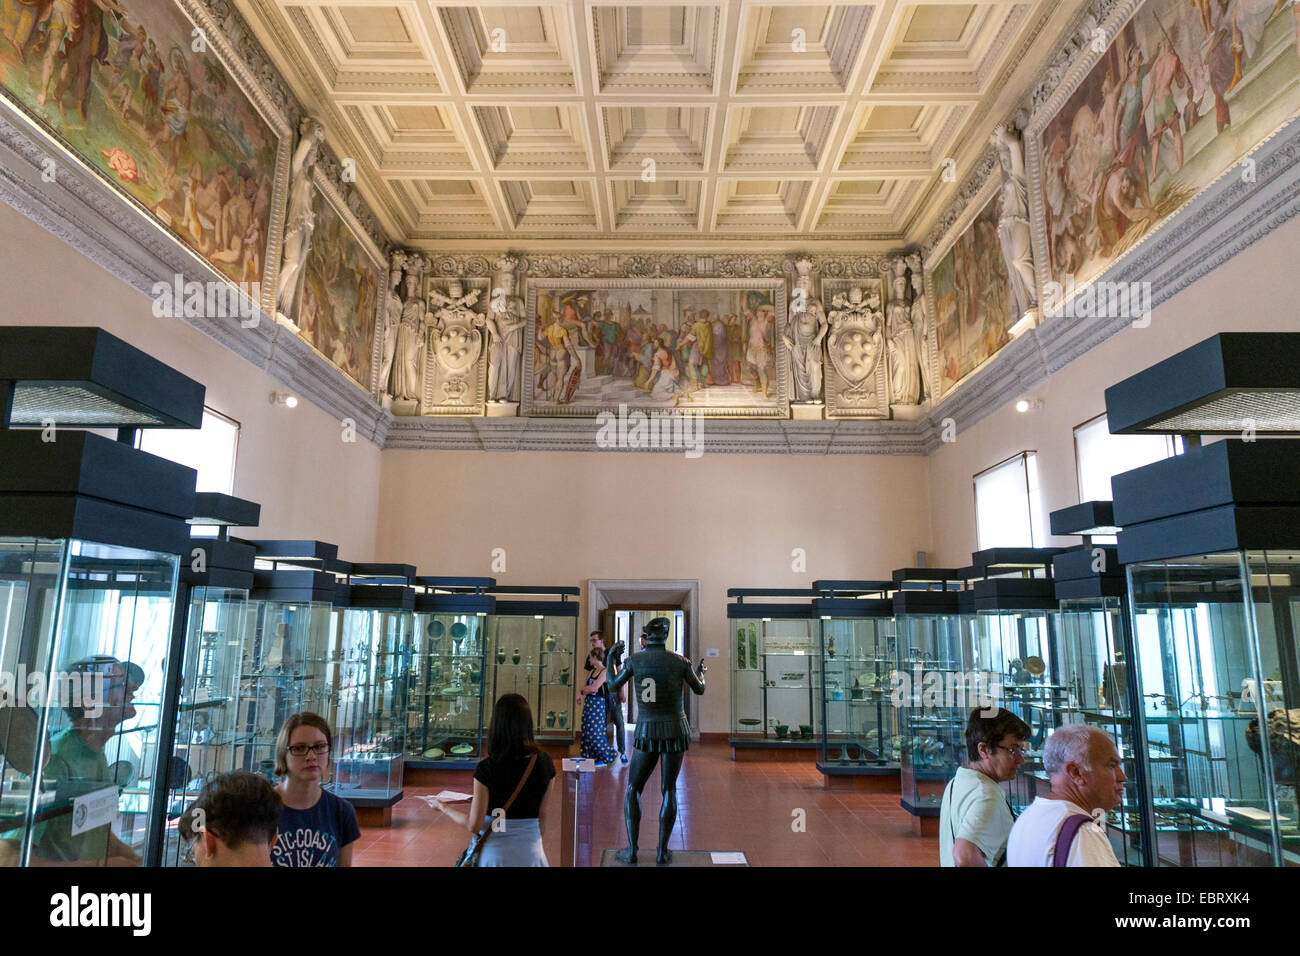 Vatikanstadt: Besucher in den Vatikanischen Museen. Foto vom 4. September 2014. Stockfoto